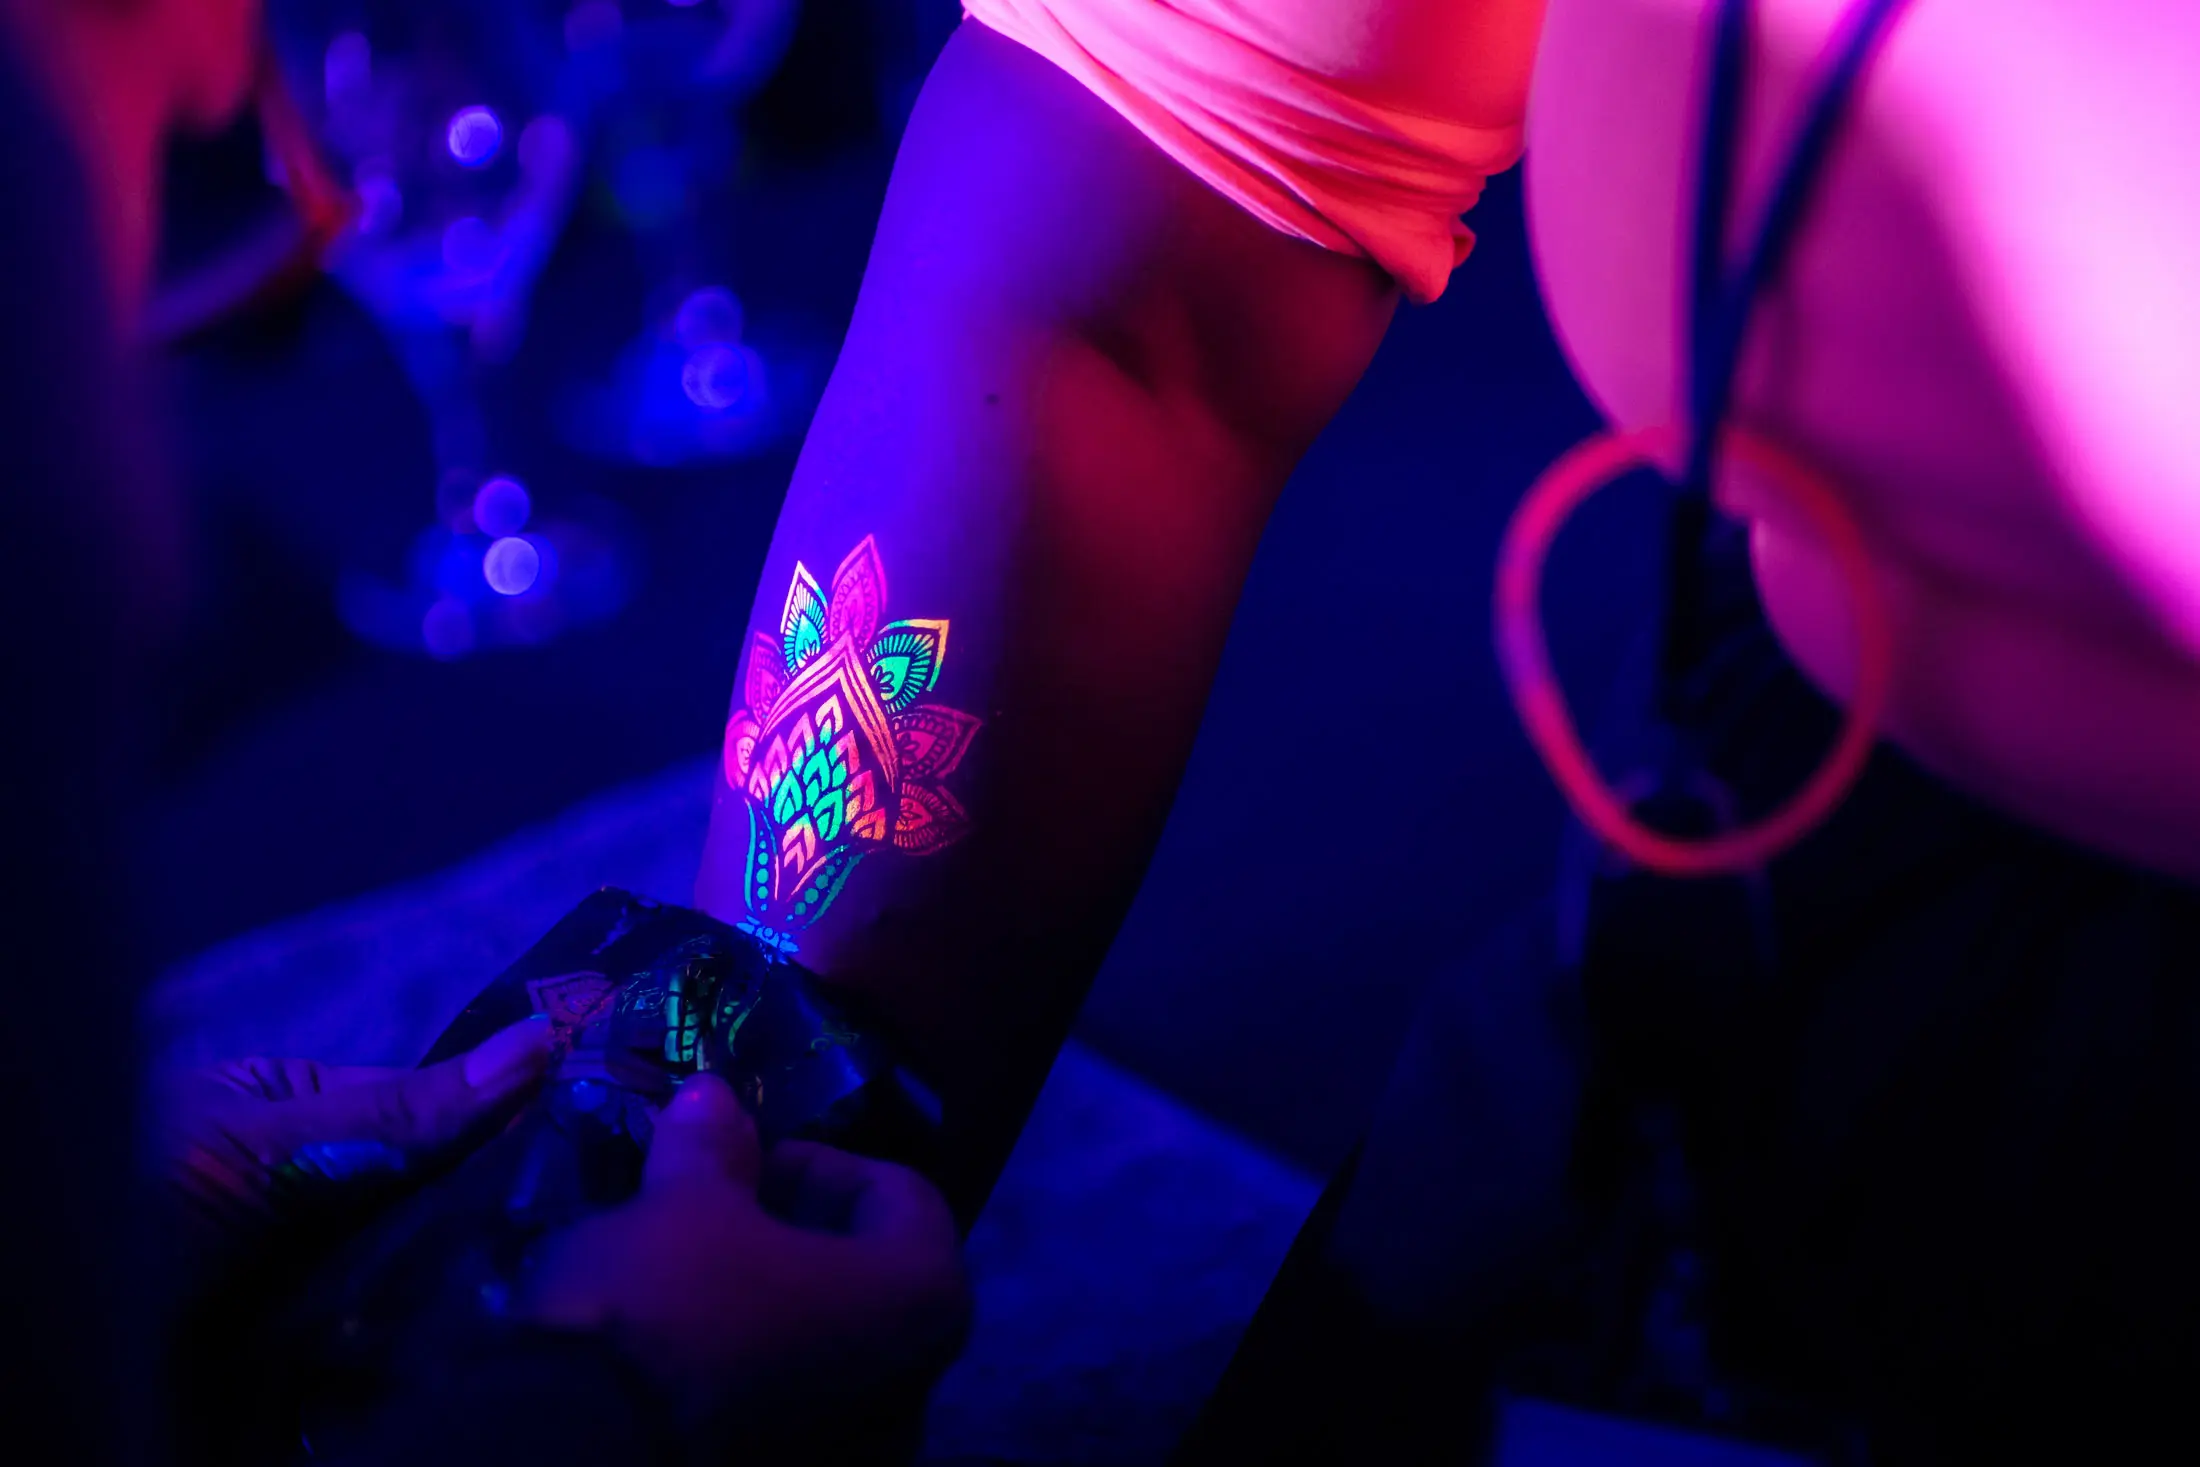 Tatouage éphémère fluo sur un bras lors d'un événement à Bruxelles